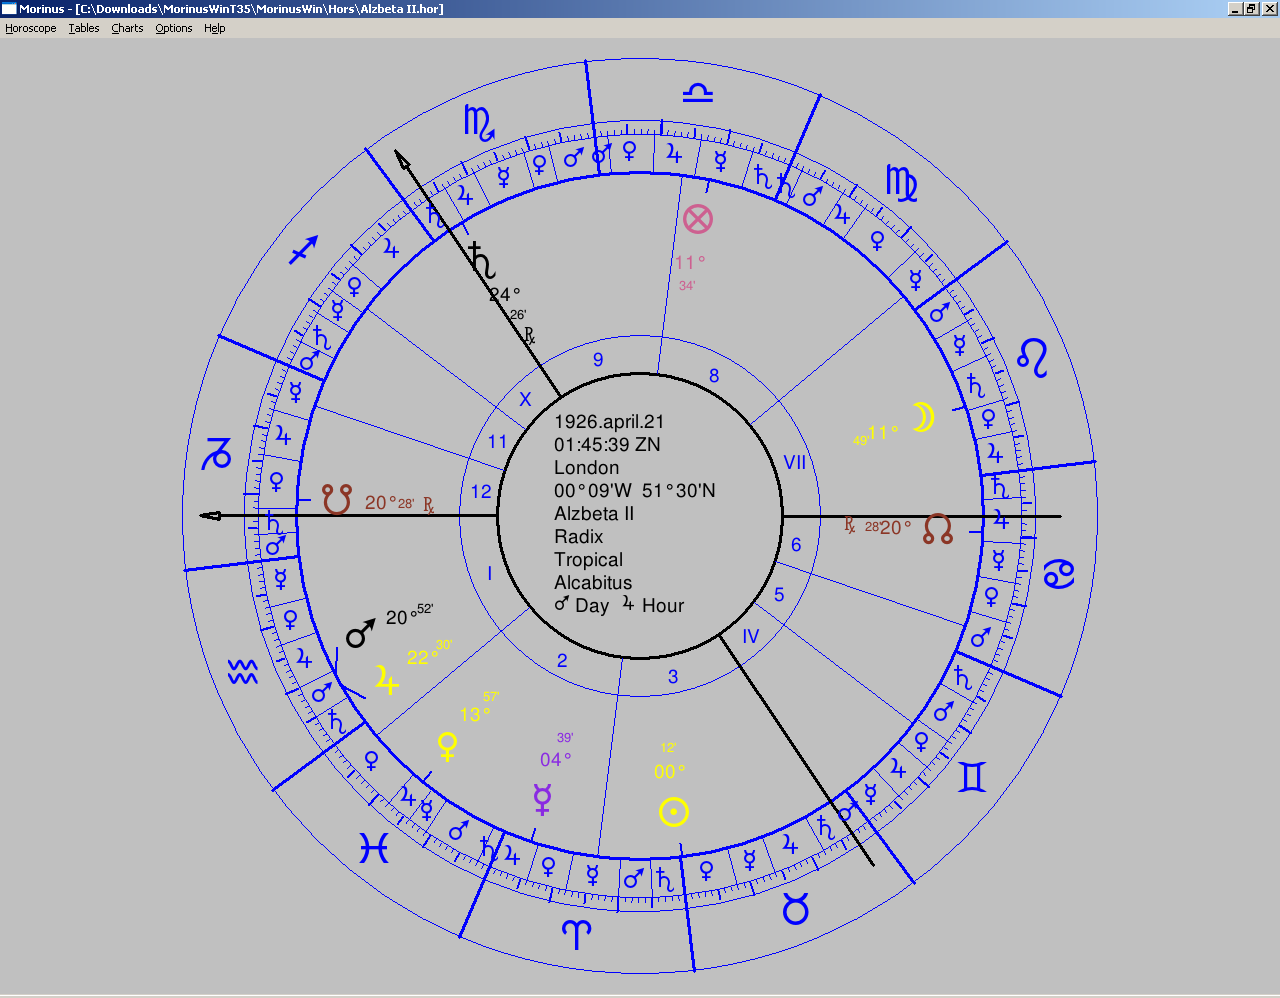 2)Rozbor vlastností a síly jednotlivých planet horoskopu. Musíme si uvědomit, že staří astrologové měli úplně jiný přístup k této otázce.